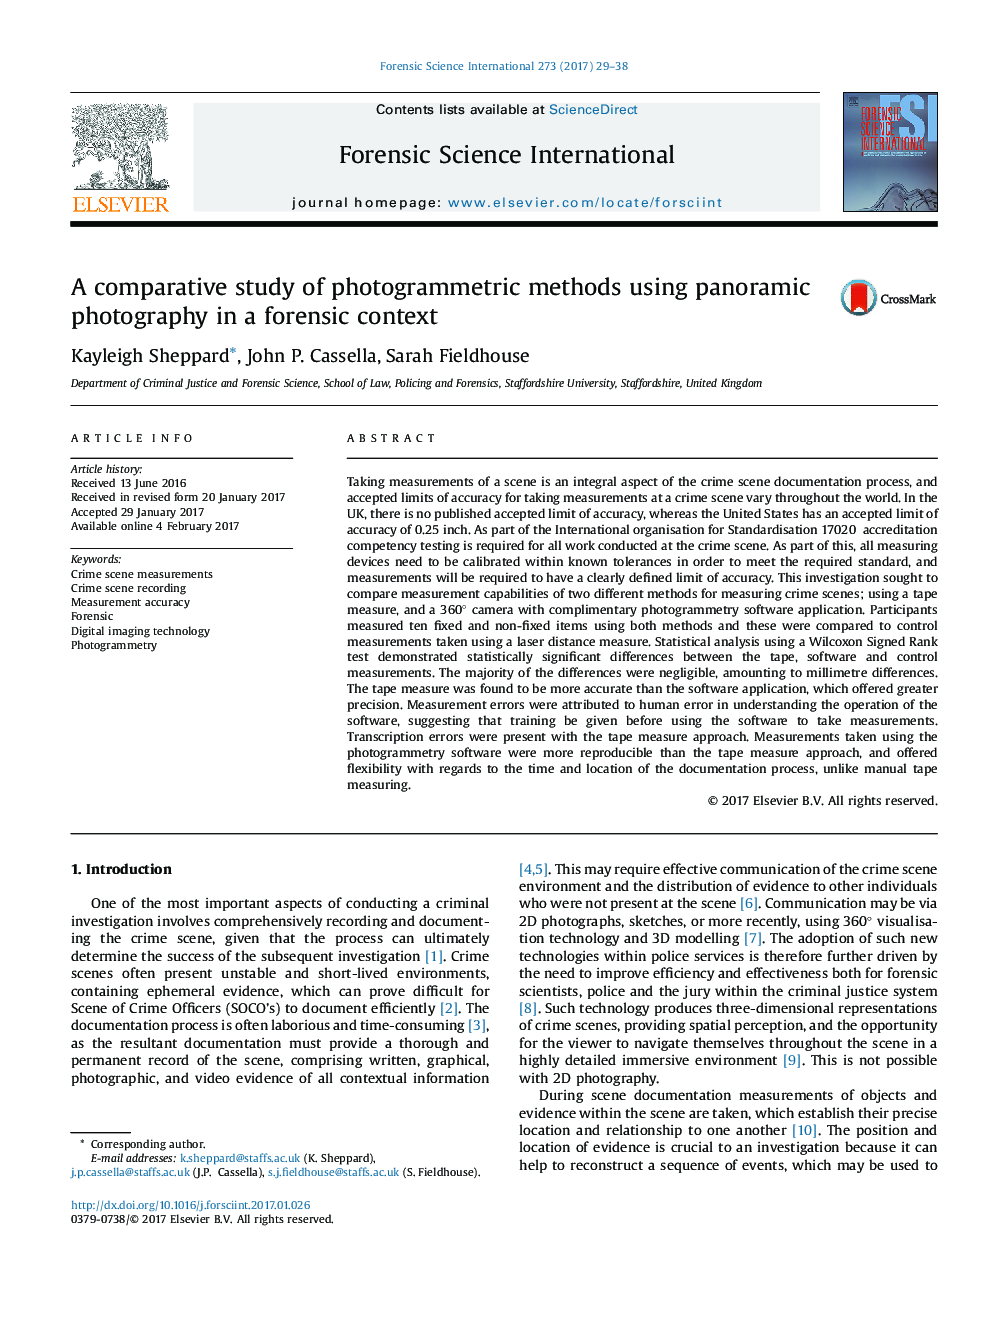 بررسی مقایسه ای روش های فوتوگرامتری با استفاده از عکاسی پانورامیک در یک زمینه قانونی 